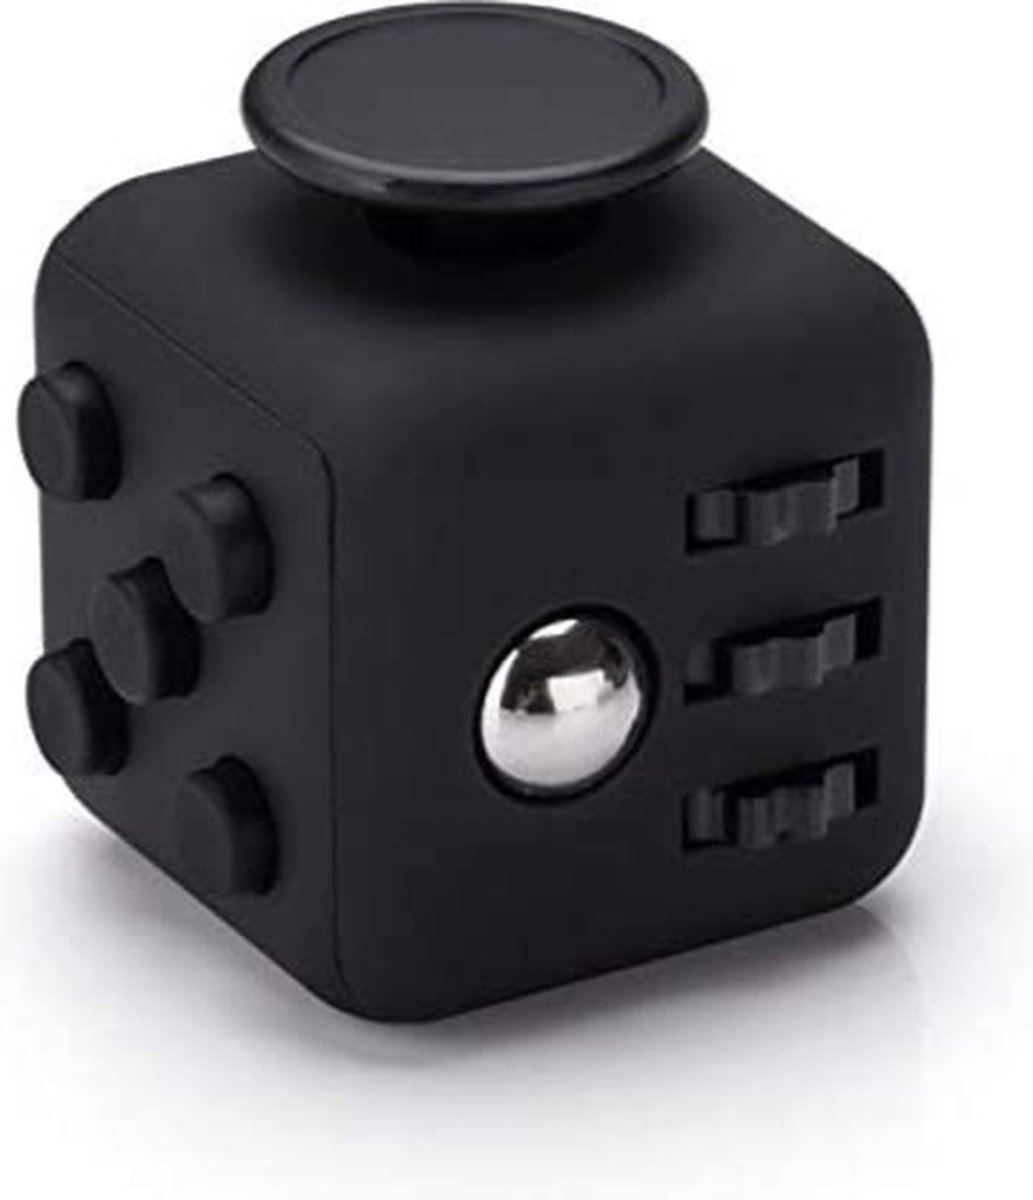 BERKATMARKT - VAPIAO Fidget Cube - antistress kubus - stresskubus speelgoed voor stressverlichting voor nervositeit voor alle leeftijdsgroepen